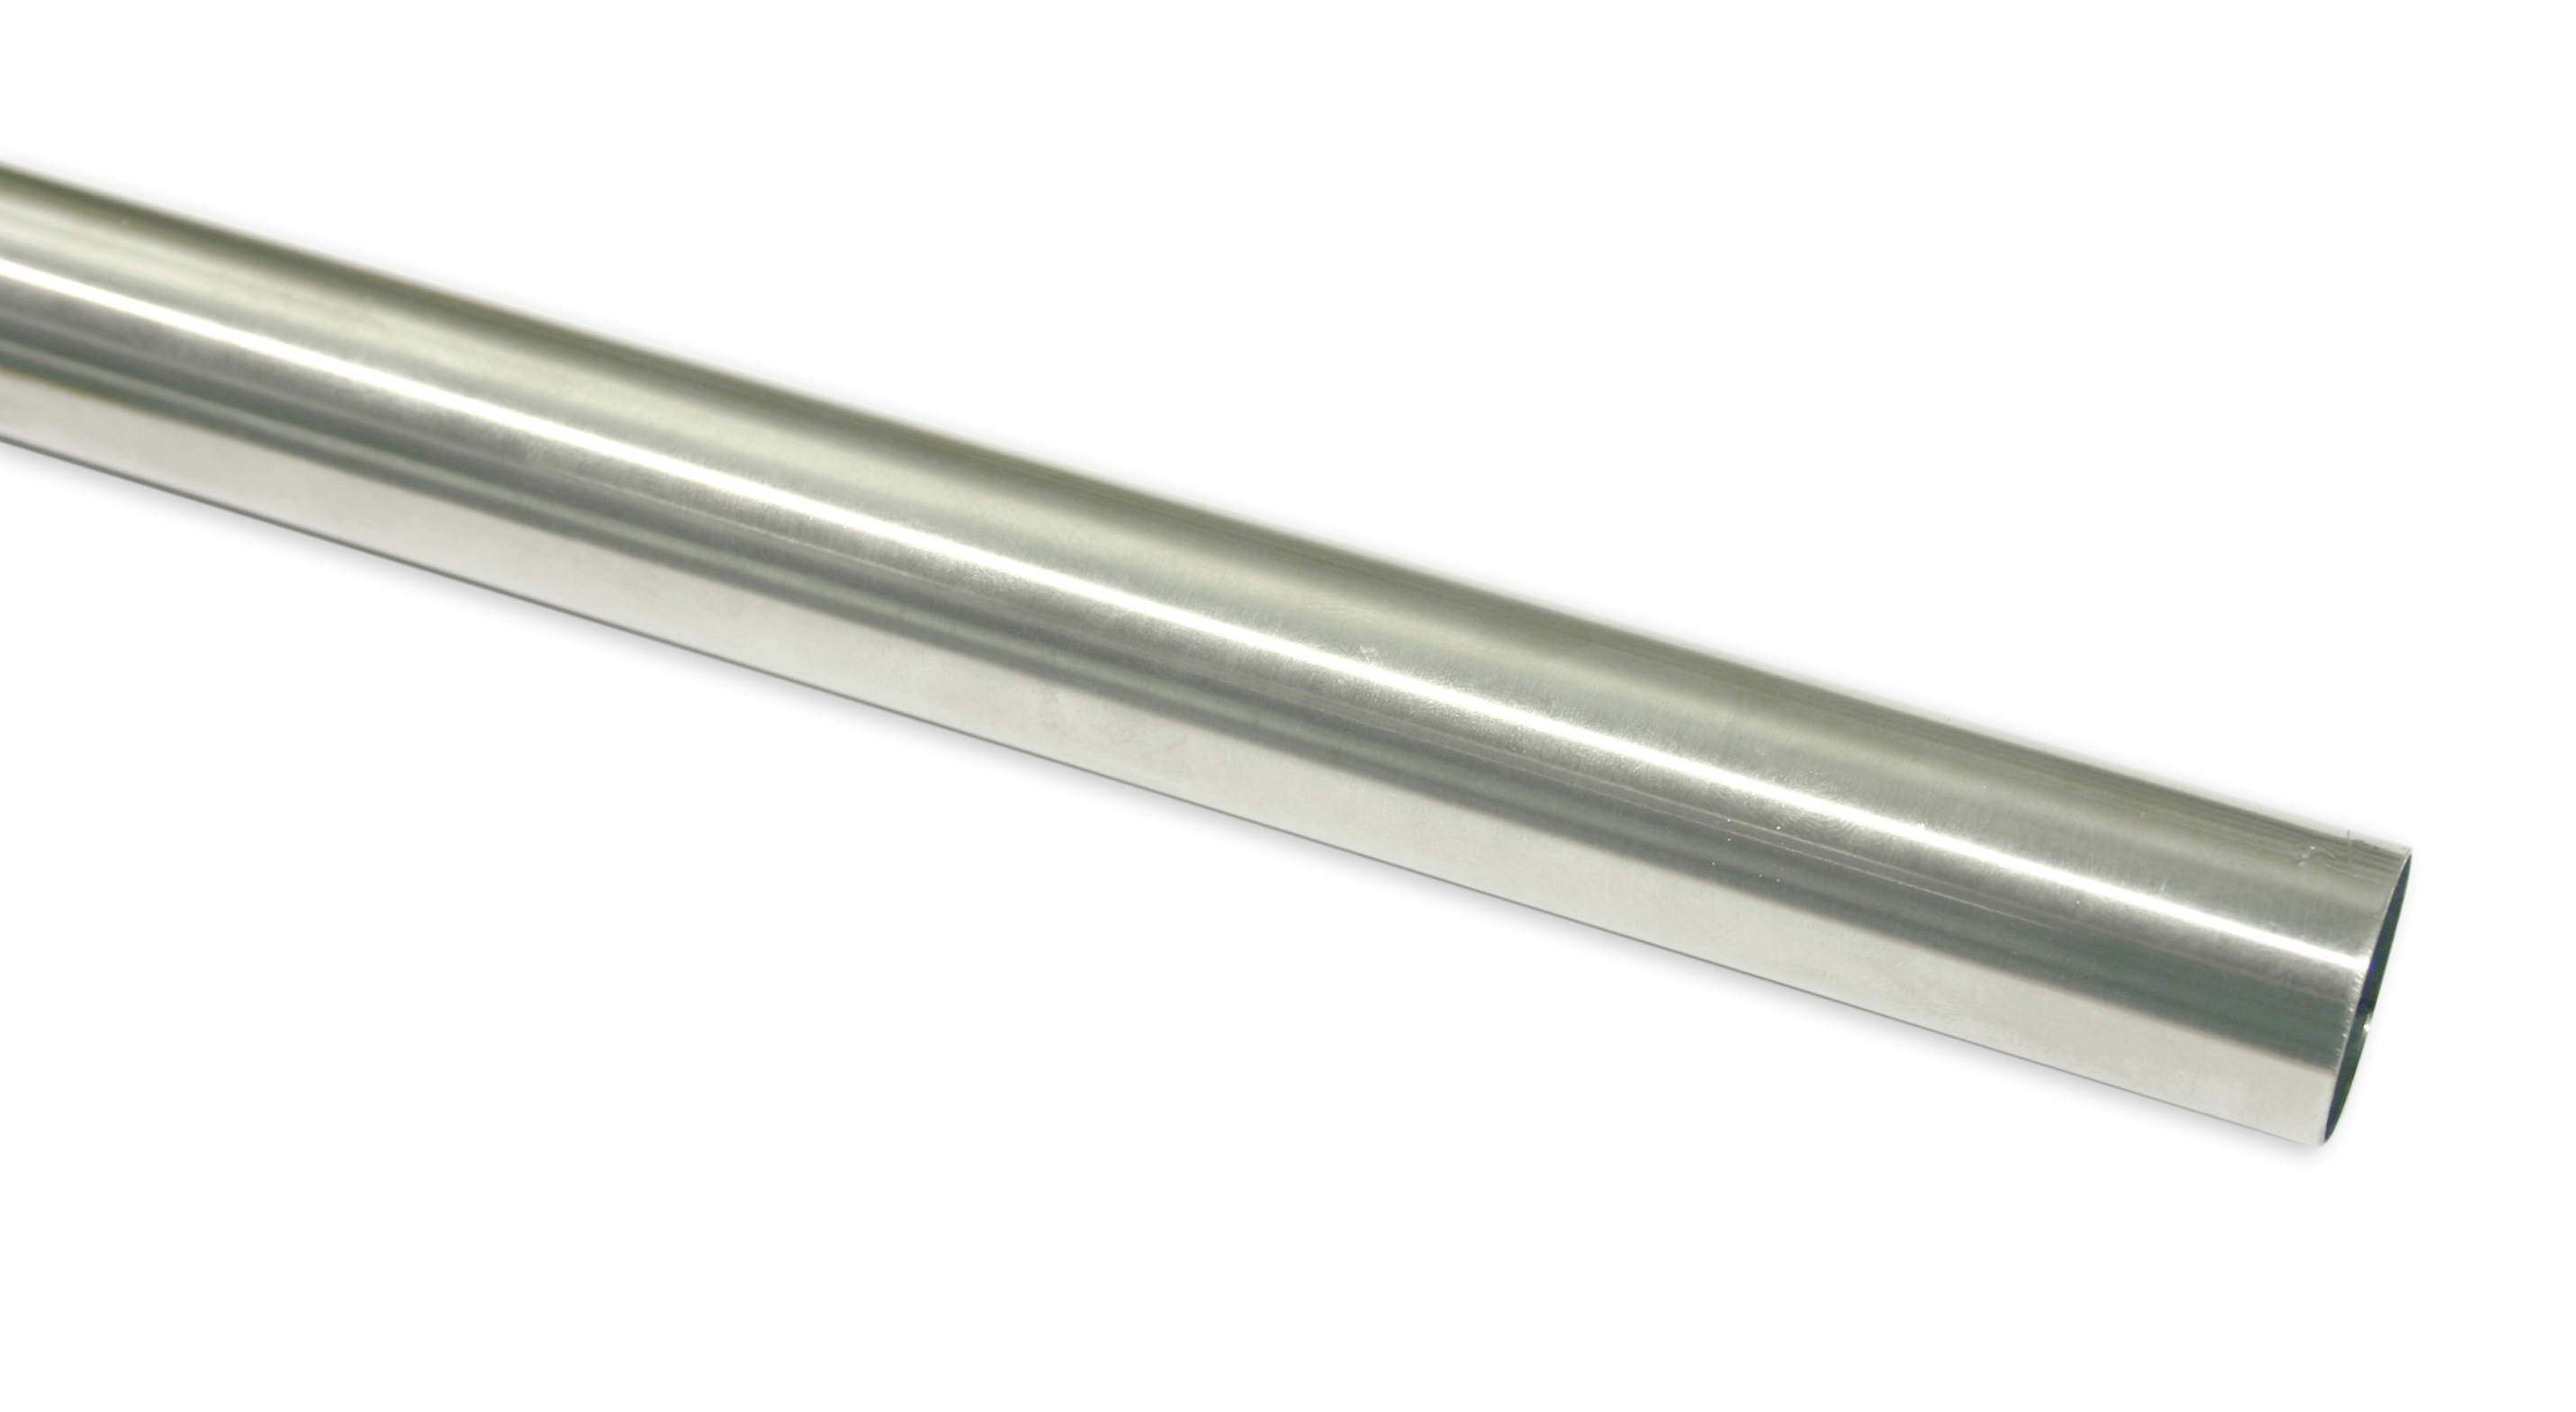 Záclonová tyč Europa 19/240cm, stříbrná satén (Kov, od délky tyče 200cm doporučujeme použít třetí nosník.)